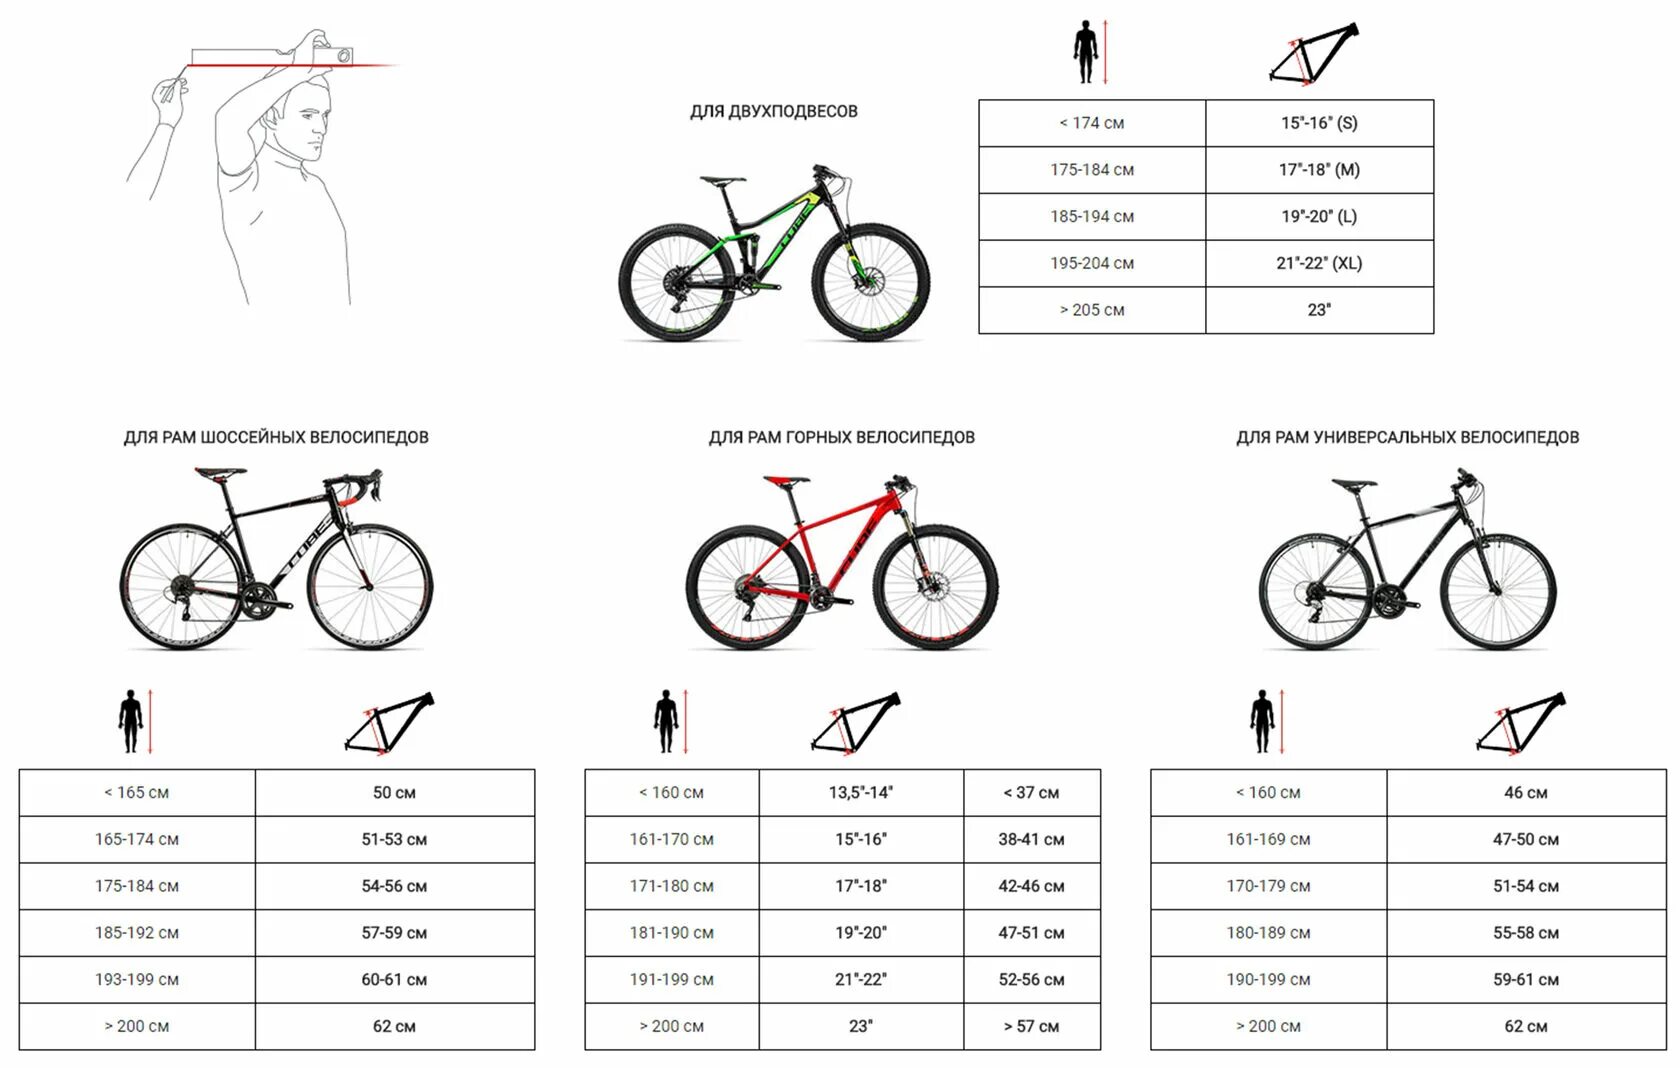 18 дюймов на какой возраст. Велосипед stels размер рамы и рост. Как выбрать размер горного велосипеда по росту таблица. Как выбрать параметры велосипеда по росту и весу таблица. Рост и рама велосипеда таблица.